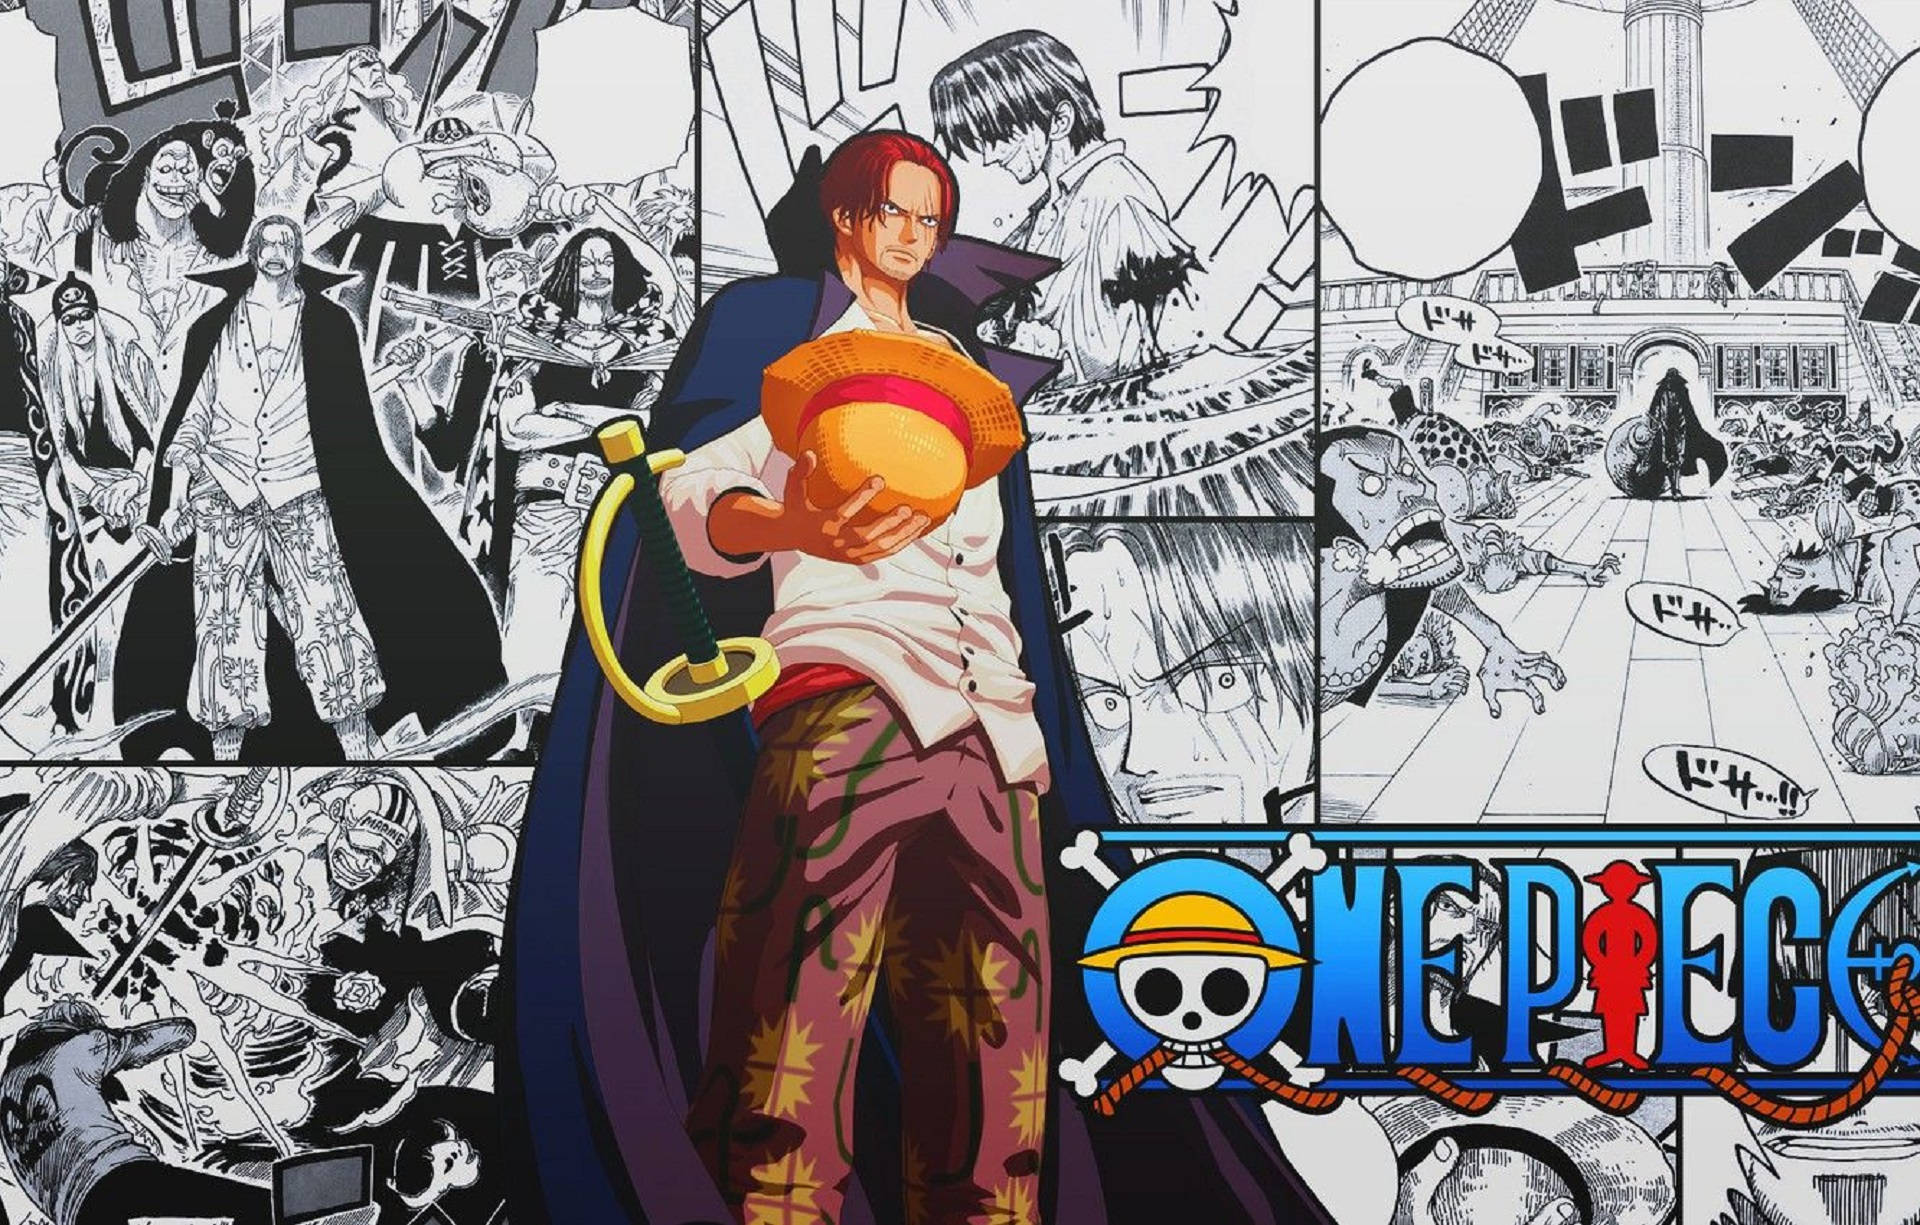 Emperor Shanks Manga Panel Background